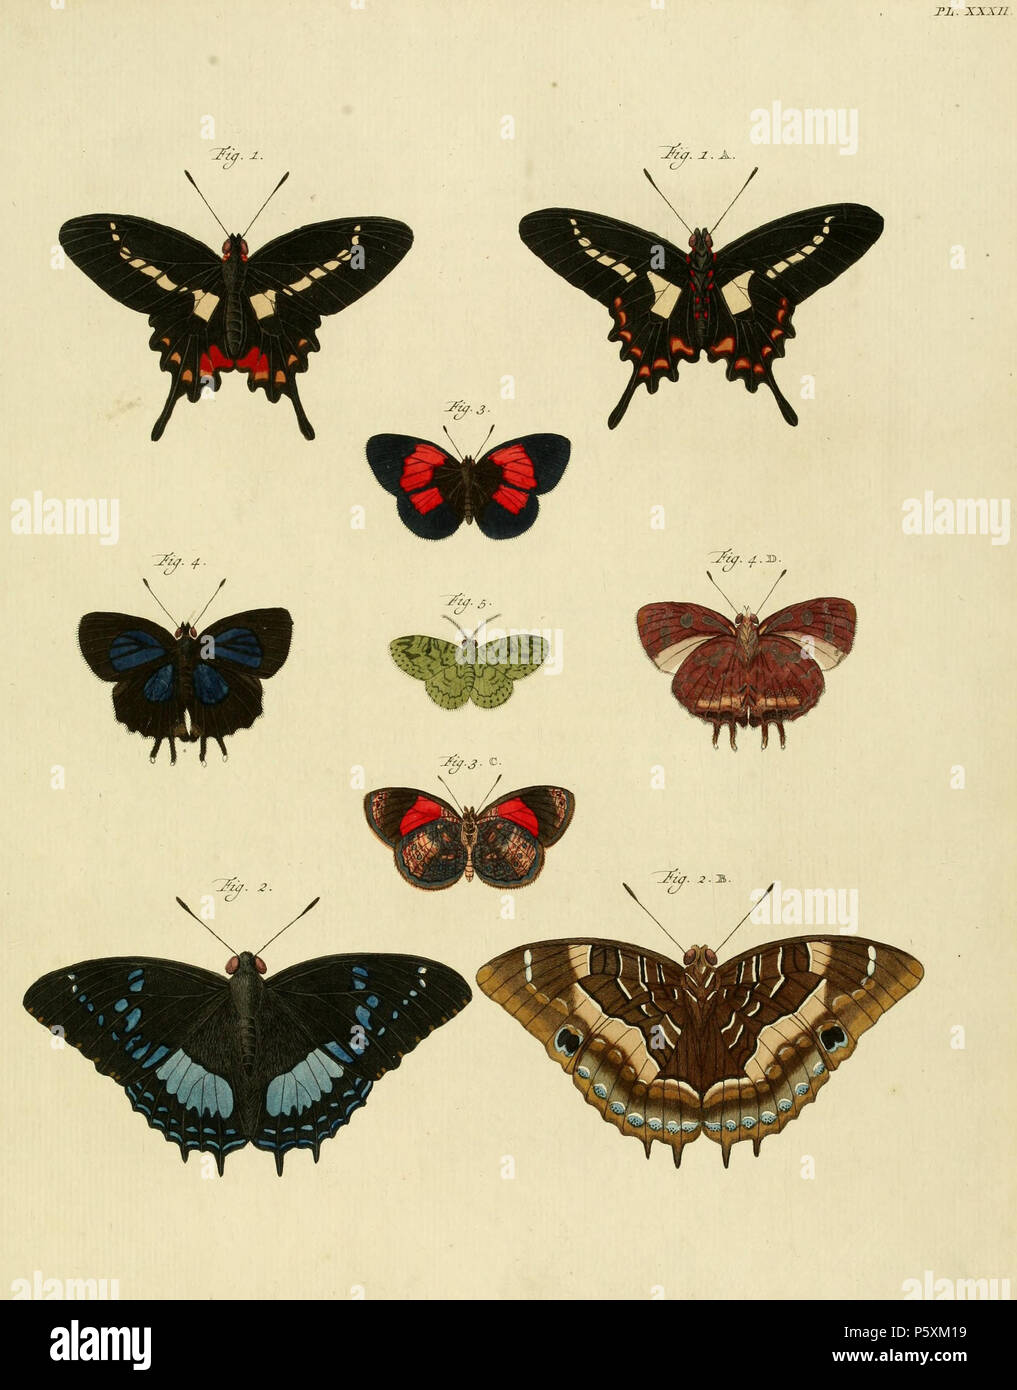 N/A. Platte XXXII Warnung: Einige Taxa/Namen können misidentified/Sachverhalt in eine andere Gattung gestellt werden. 1: Pap [Ilio] EQ [ues] Achiv [us] AGAVUS (=Parides agavus (Drury, 1782), siehe Funet). Fotos von Schmetterlingen von Amerika. 2: Pap [Ilio] EQ [ues] Argon [aut.] THYESTES (=Charaxes xiphares thyestes (Stoll, 1790), siehe Funet). Fotos, die bei der biologischen Vielfalt Explorer. Auch auf pl. 377 A, B als [Schmetterling] Xiphares. 3: Pap [Ilio] Nymphe [Alis] Phal [eratus] PYRAMUS (=Haematera pyrame (Hübner, [1819]), siehe Funet). Fotos von Schmetterlingen von Amerika. 4: Pap [Ilio] Pleb [ejus] Caud [atus] TIMOLEON (=Iraota timoleo Stockfoto